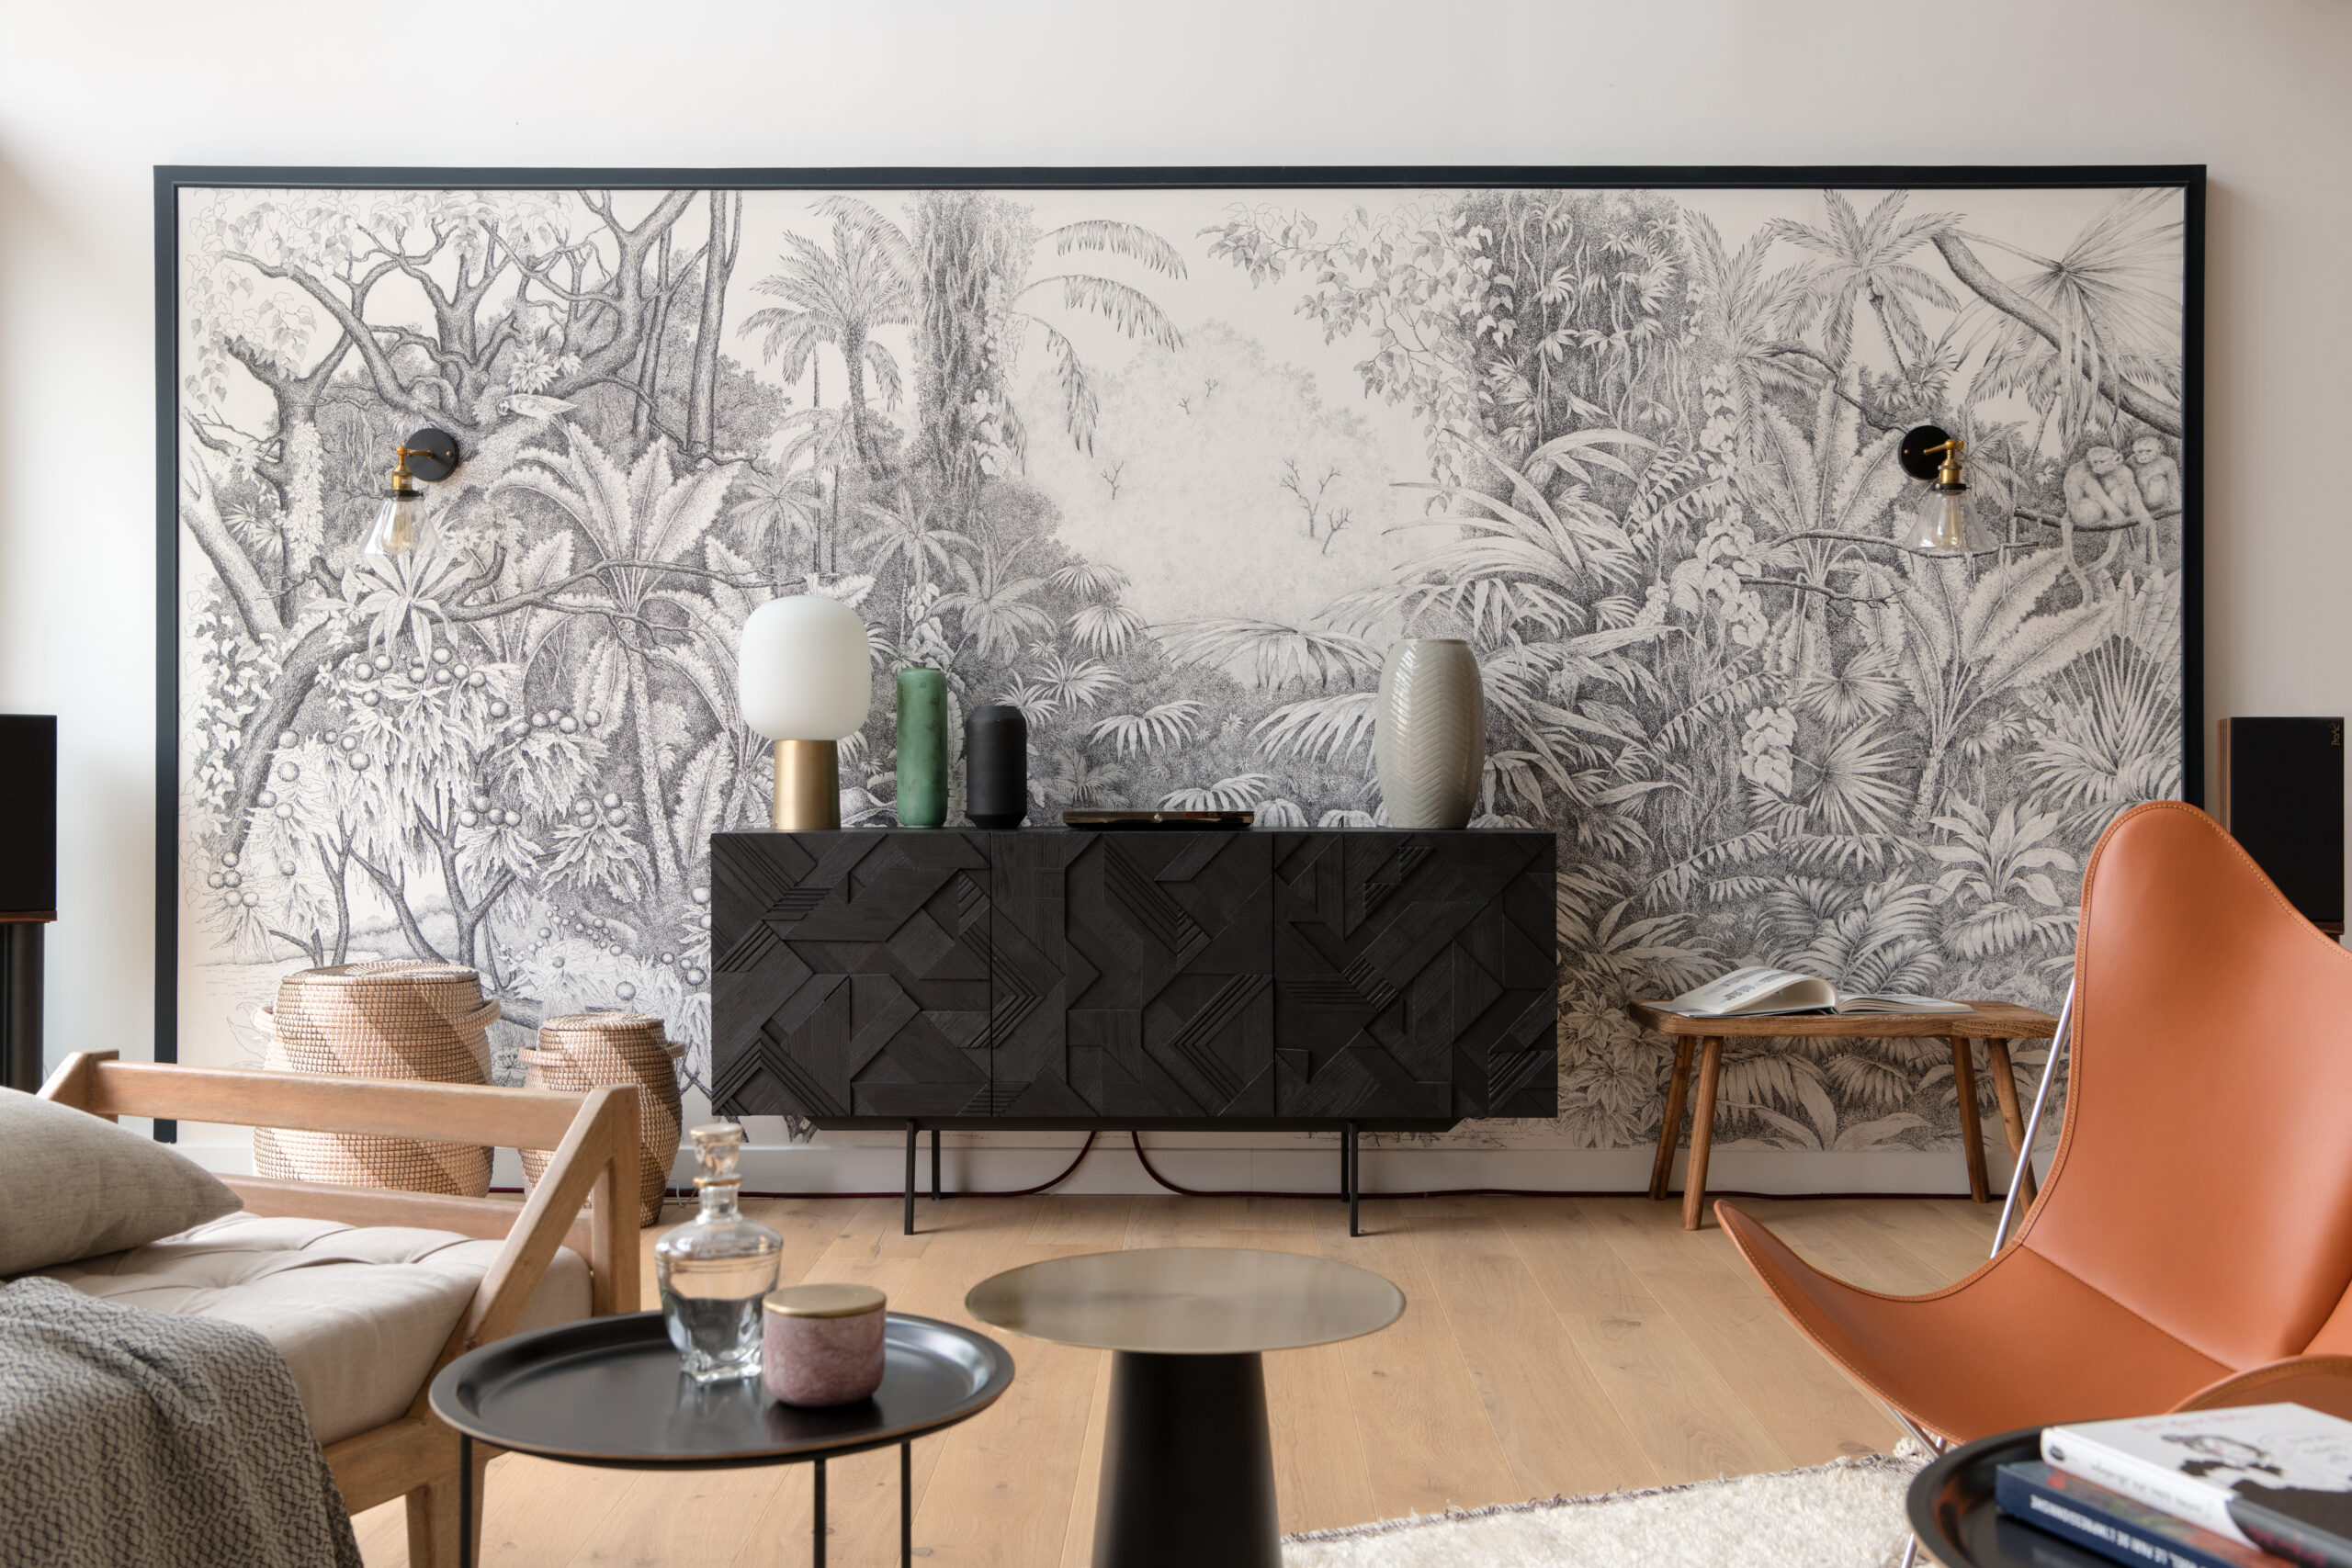 Salon avec un encadré de papier peint tropical noir et blanc. La pièce est composée de meubles en bois et de la couleur orange qui crée de beaux contrastes.